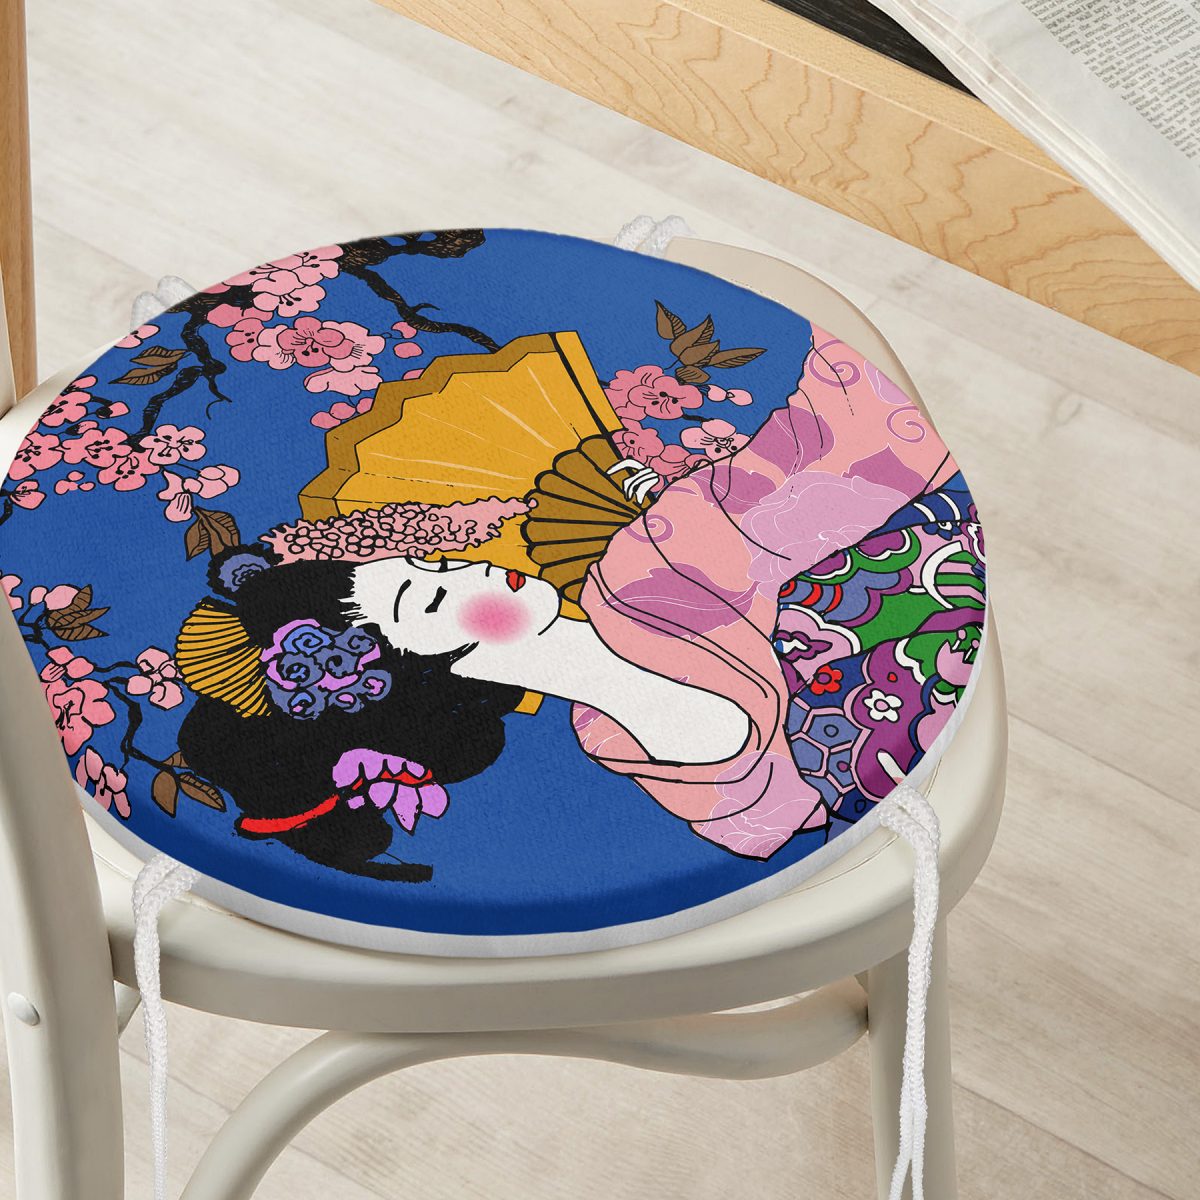 Çiçek Desenli Yelpazeli Japon Kız Motifli Modern Yuvarlak Fermuarlı Sandalye Minderi Realhomes